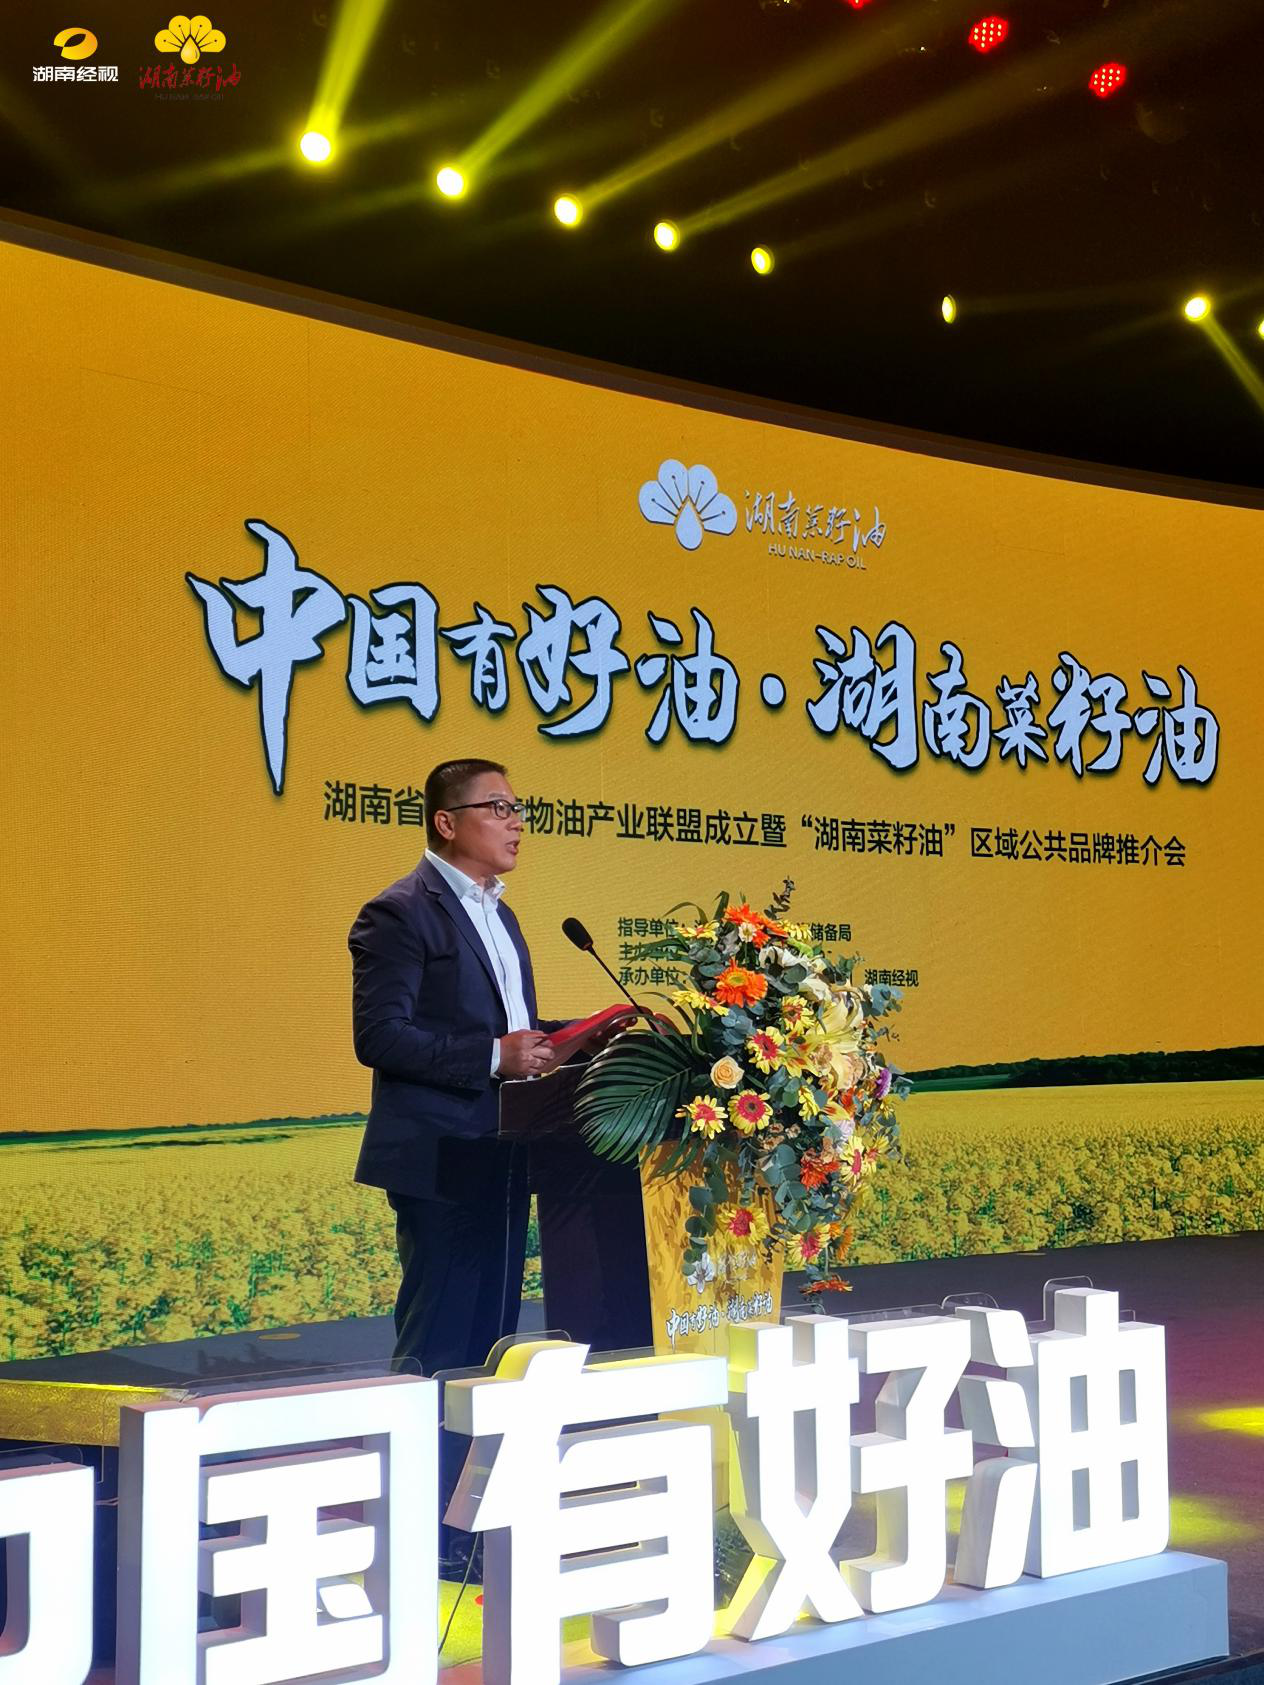 中国有好油∙湖南菜籽油 湖南省食用植物油产业联盟成立